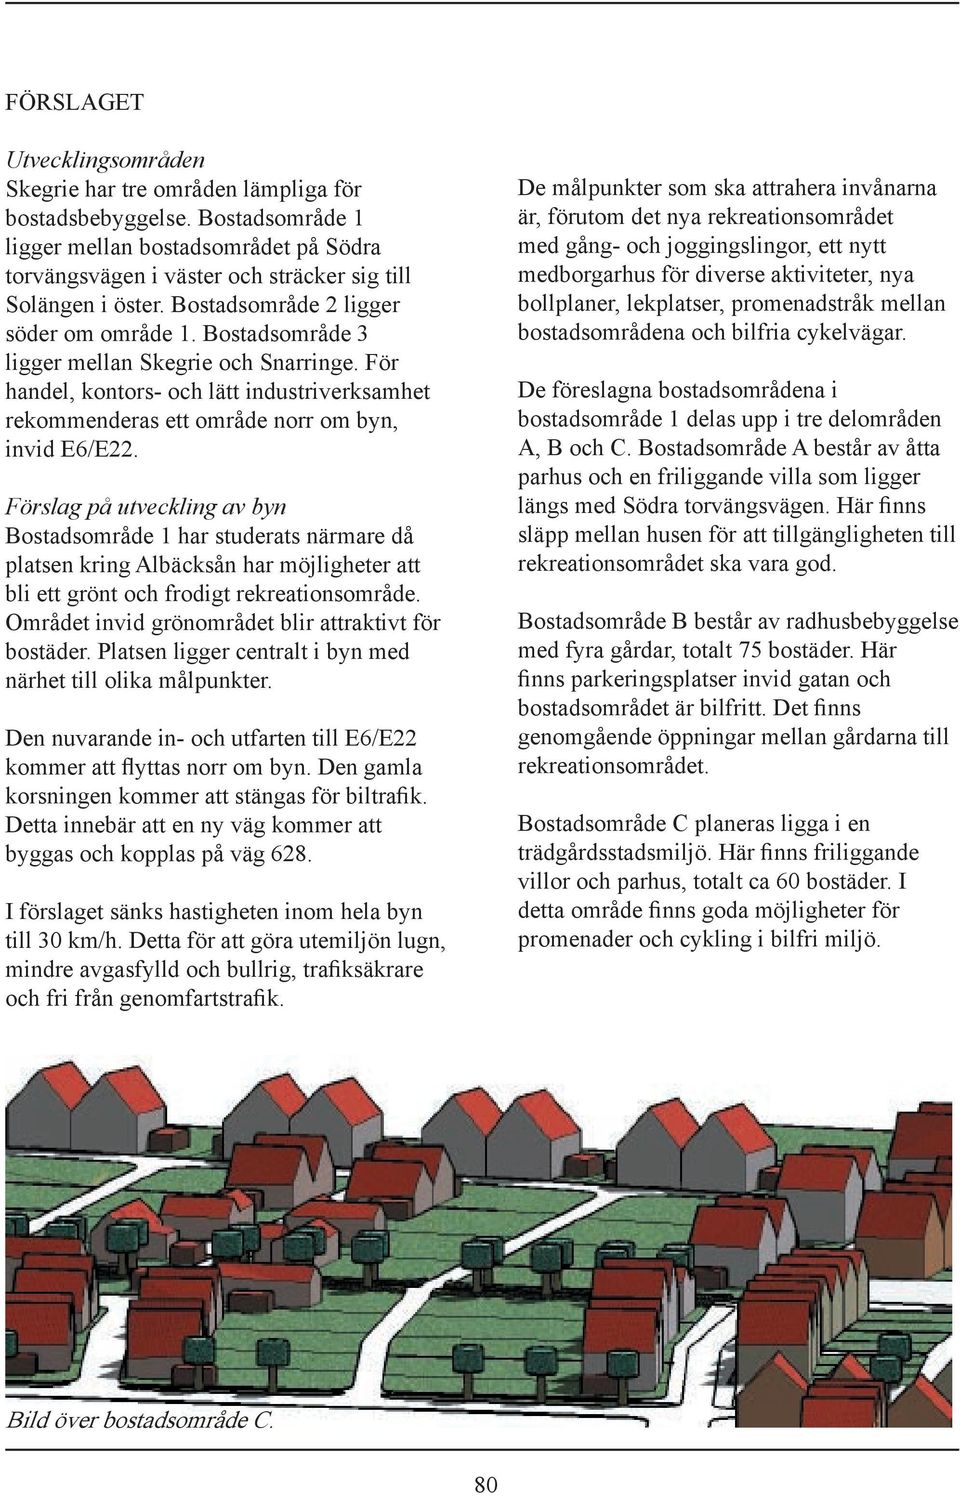 Bostadsområde 3 ligger mellan Skegrie och Snarringe. För handel, kontors- och lätt industriverksamhet rekommenderas ett område norr om byn, invid E6/E22.